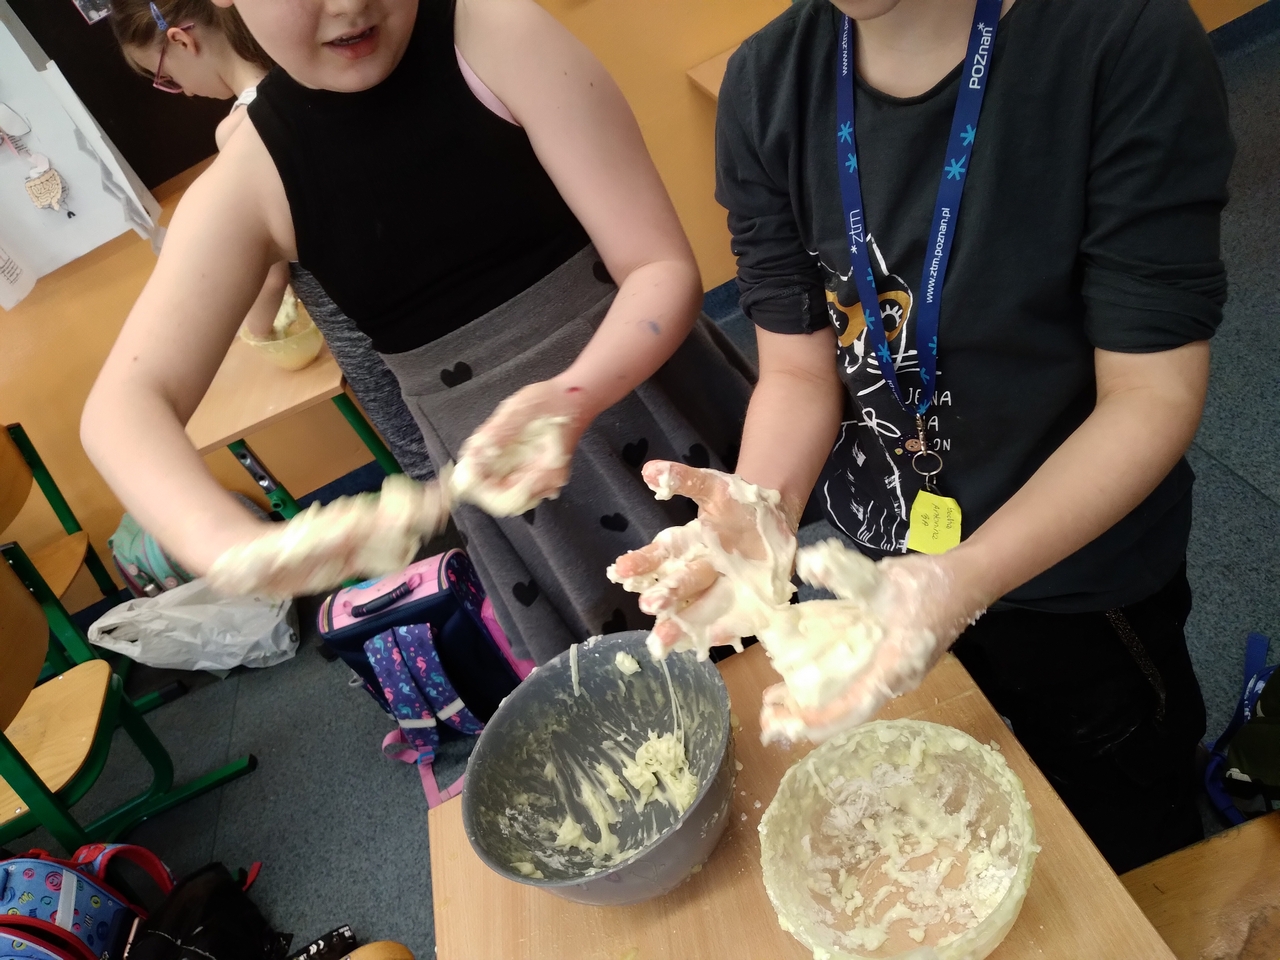 Zajecia Sensoplastyki z wykorzystaniem galaretki oraz mąki ziemniaczanej. Zdjecia przedstawiają sylwetki dzieci podczas swobodnej zabawy.